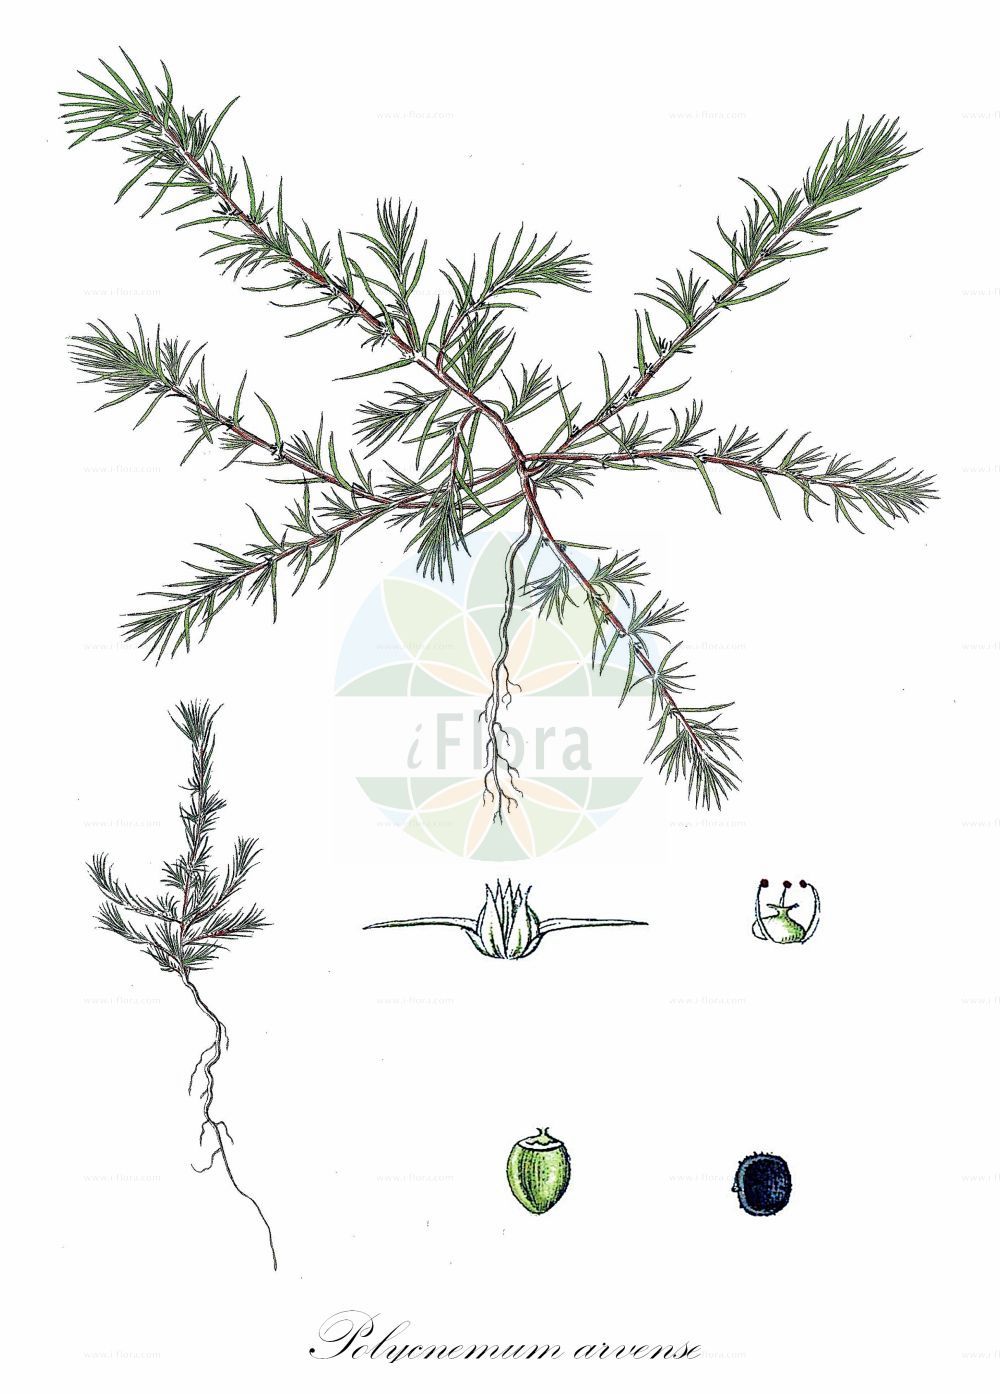 Historische Abbildung von Polycnemum arvense (Acker-Knorpelkraut - Field Polycnemum). Das Bild zeigt Blatt, Bluete, Frucht und Same. ---- Historical Drawing of Polycnemum arvense (Acker-Knorpelkraut - Field Polycnemum). The image is showing leaf, flower, fruit and seed.(Polycnemum arvense,Acker-Knorpelkraut,Field Polycnemum,Polycnemum arvense,Polycnemum minus,Acker-Knorpelkraut,Field Polycnemum,Field Needleleaf,Polycnemum,Knorpelkraut,Polycneum,Amaranthaceae,Fuchsschwanzgewächse,Pigweed family,Blatt,Bluete,Frucht,Same,leaf,flower,fruit,seed)